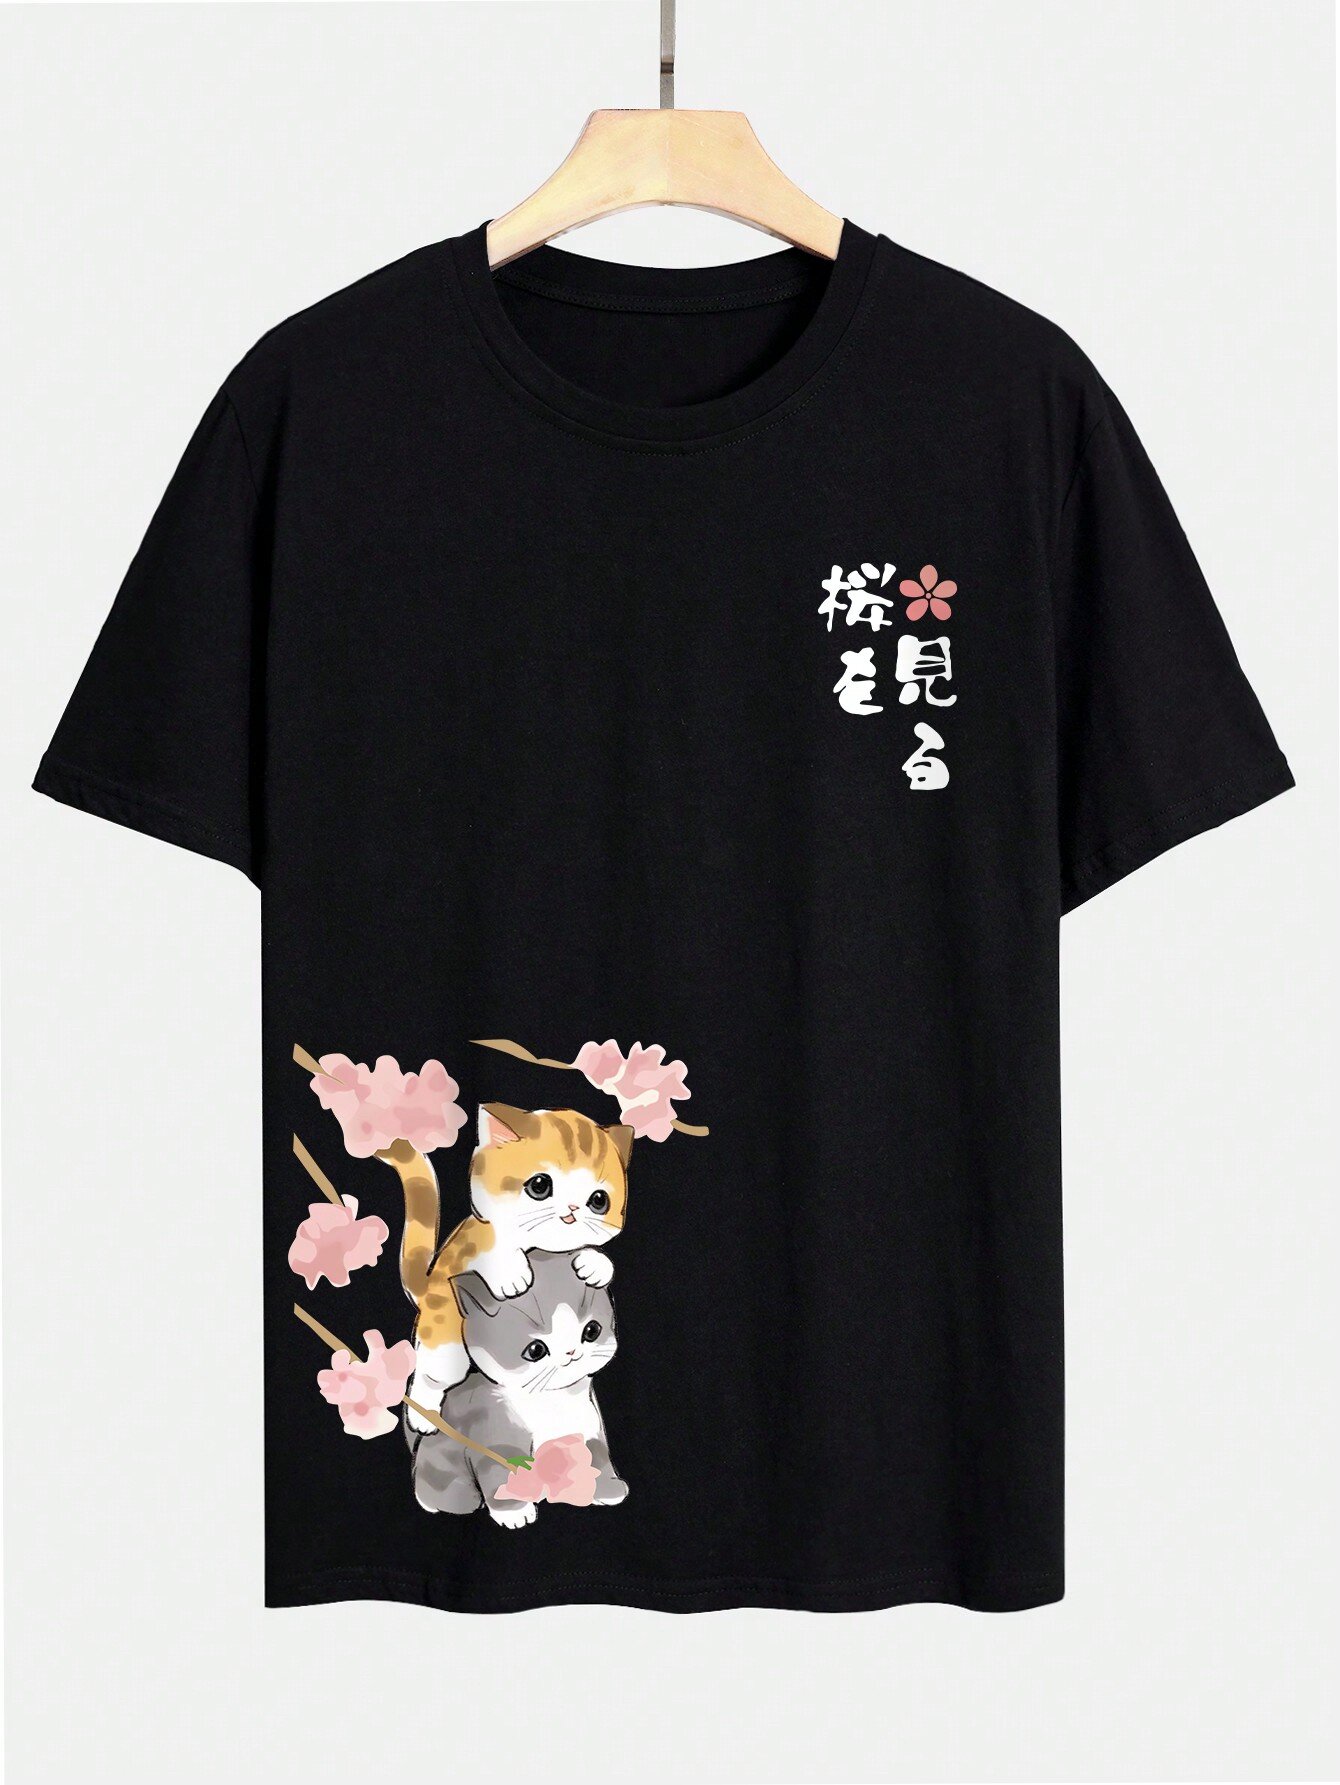 T-shirt a maniche corte invernali da uomo con stampa di gatti giapponesi con fiori di ciliegio Collo